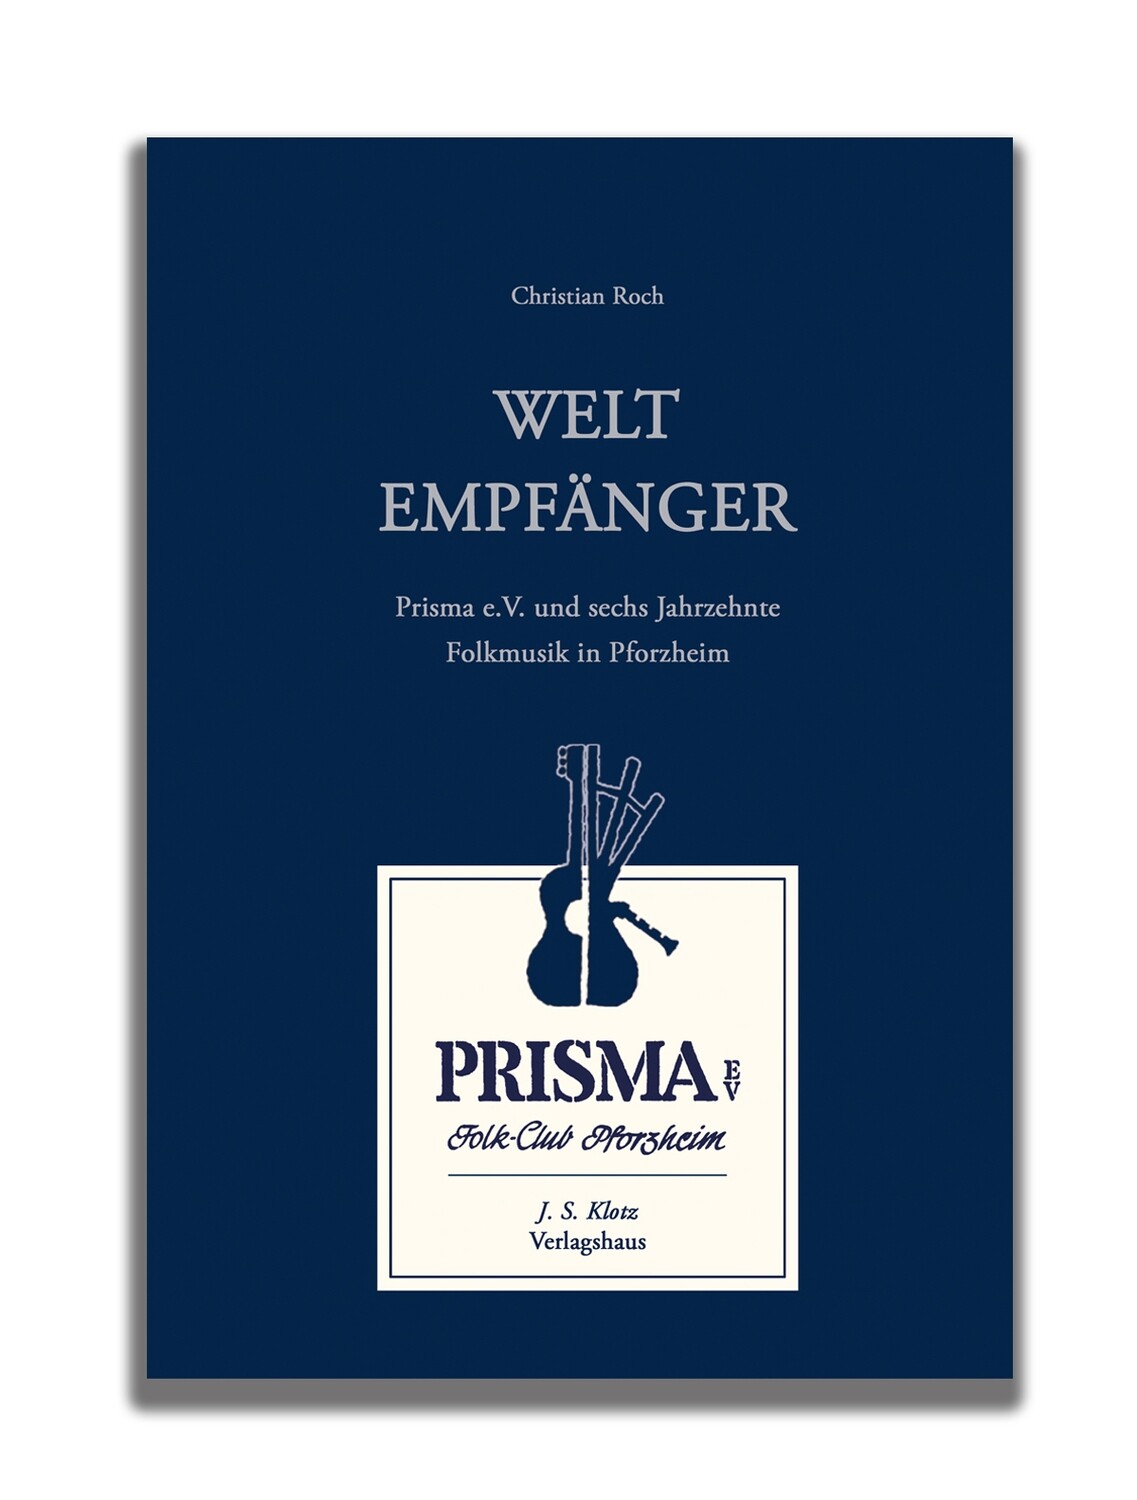 WELTEMPFÄNGER - Prisma e.V. und sechs Jahrzehnte Folkmusik in Pforzheim